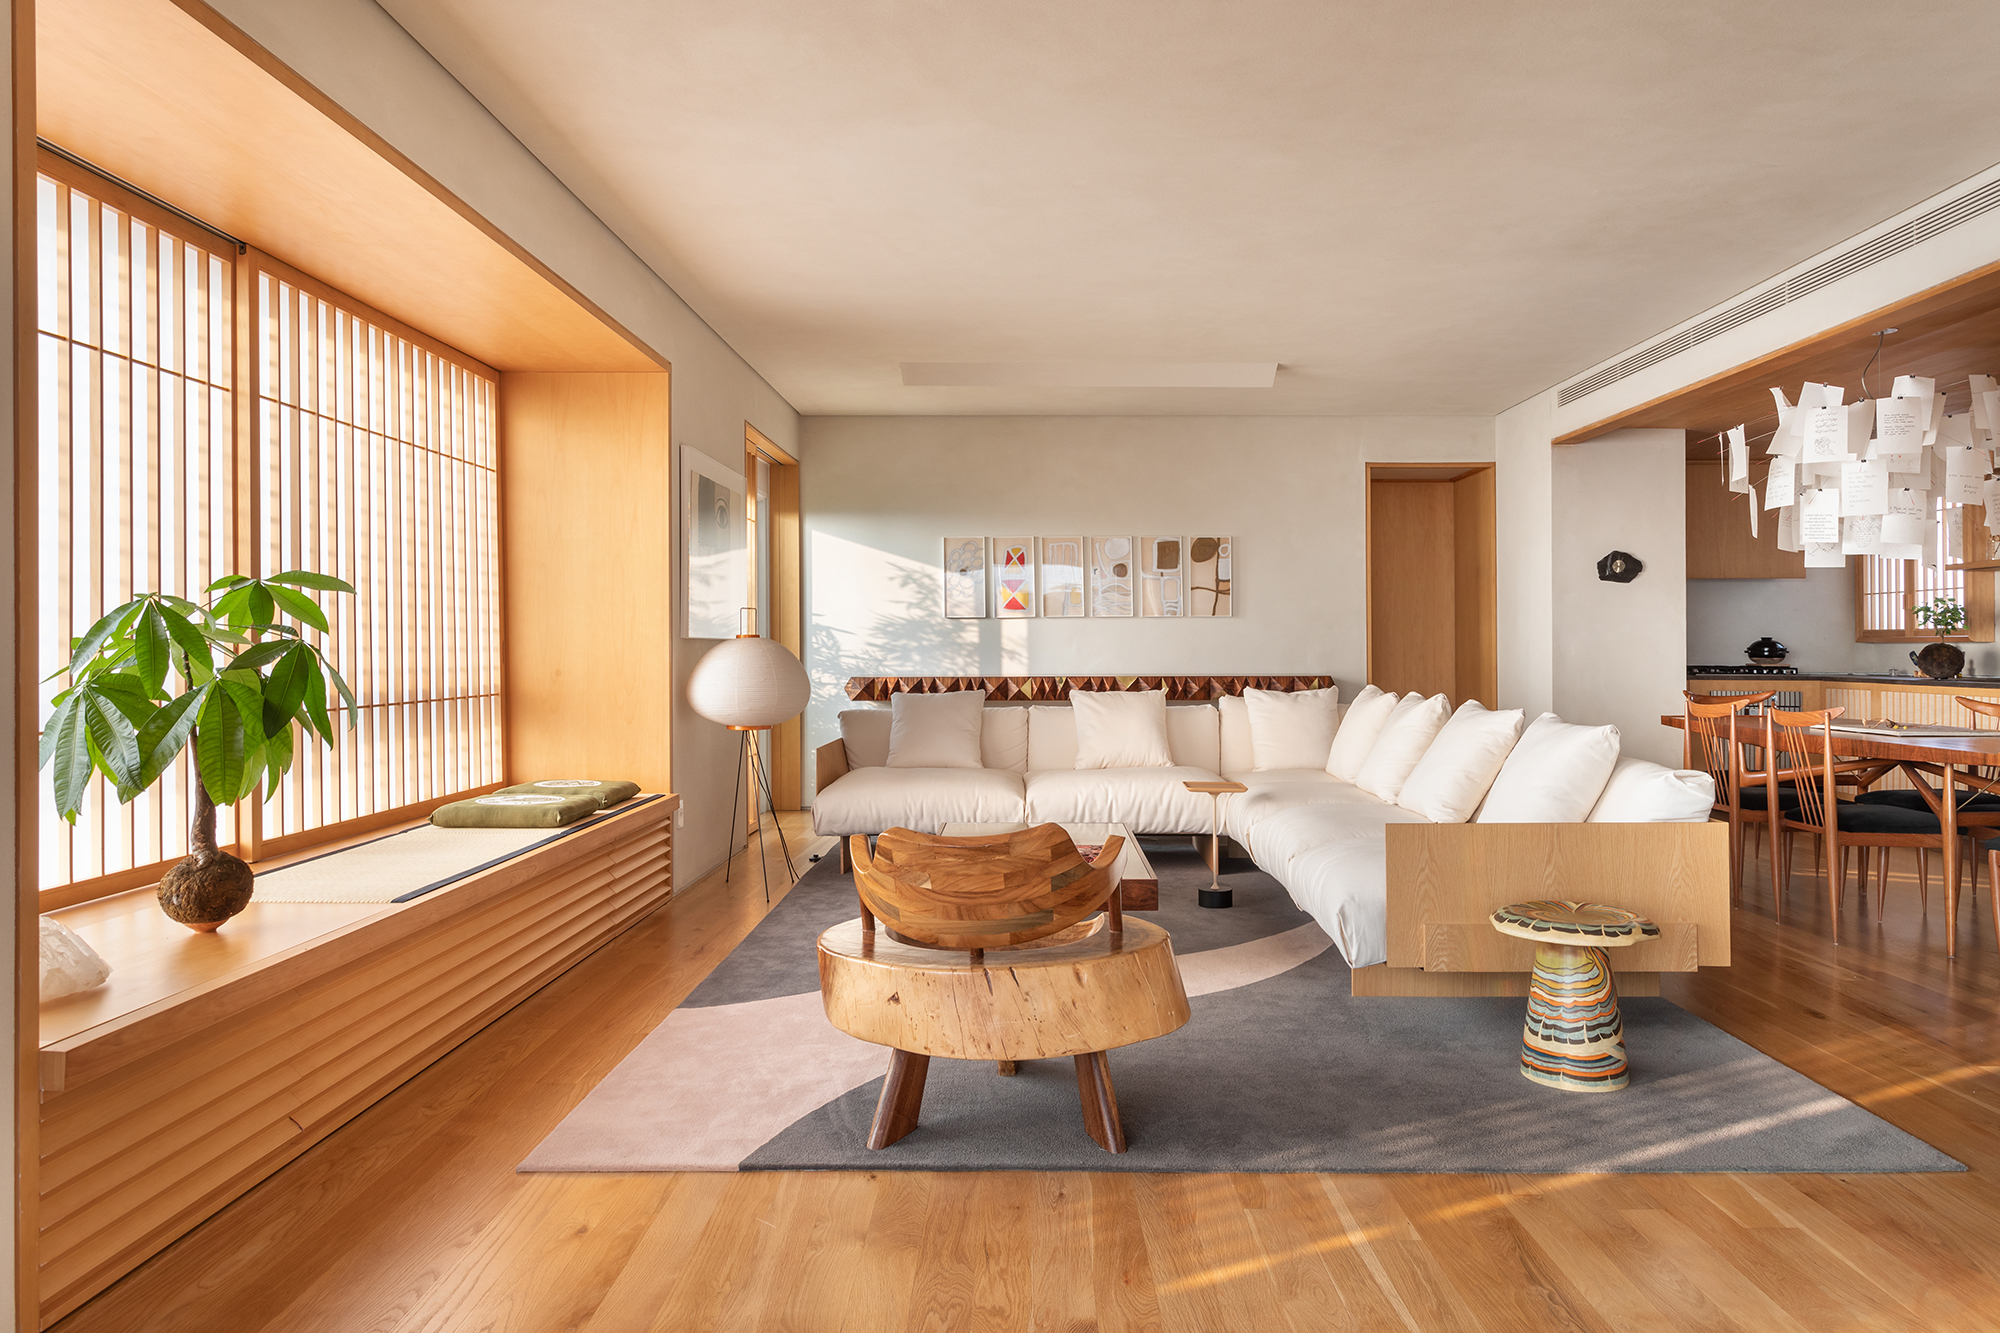 Apartamento 140 m2 inspirado arquitetura japonesa Terra Capobianco decoração madeira sala estar sofa tapete luminaria poltrona